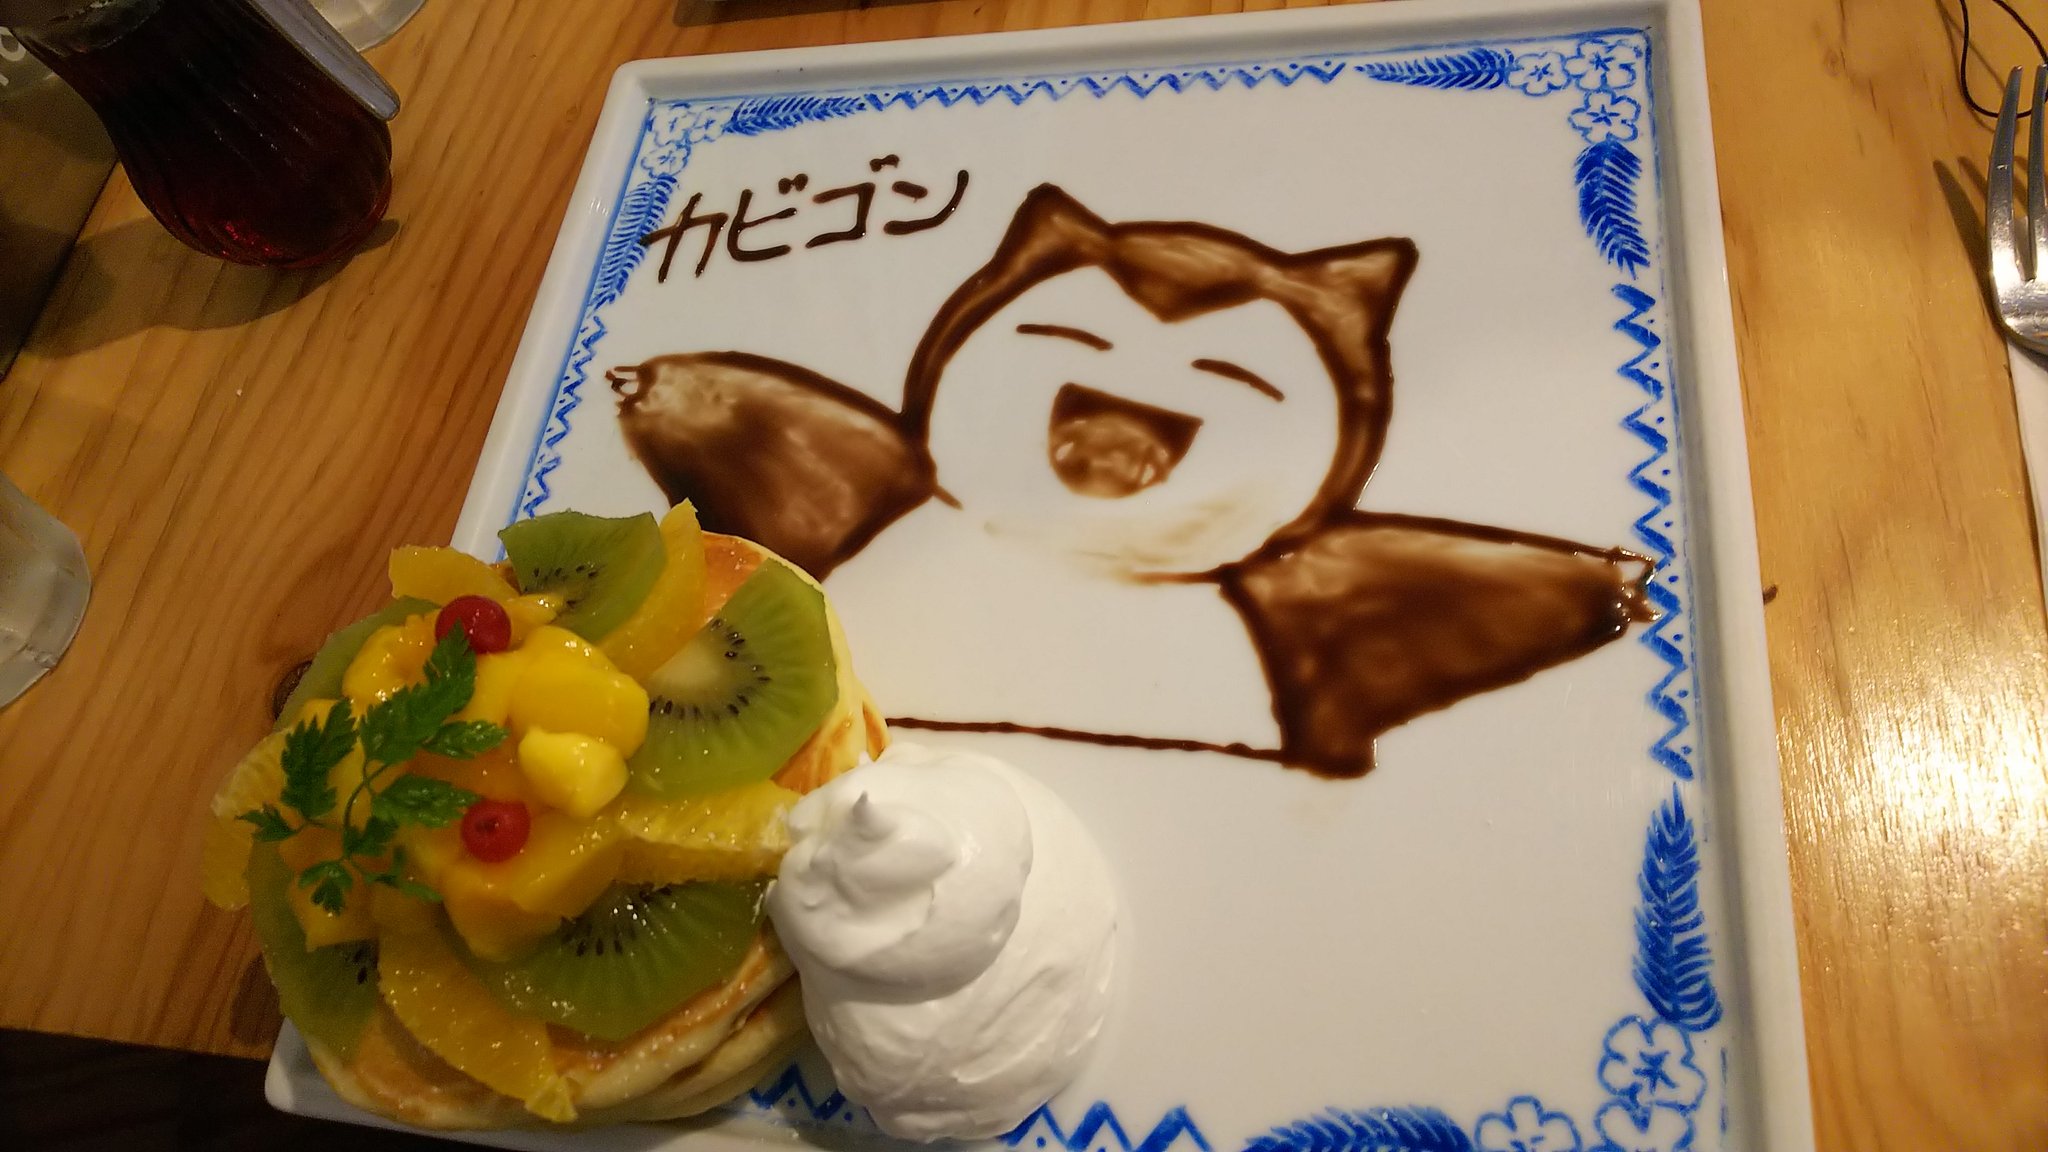 Yugon Froglove Auf Twitter Art Weets Cicaでカビゴンのアートパンケーキを頼みました